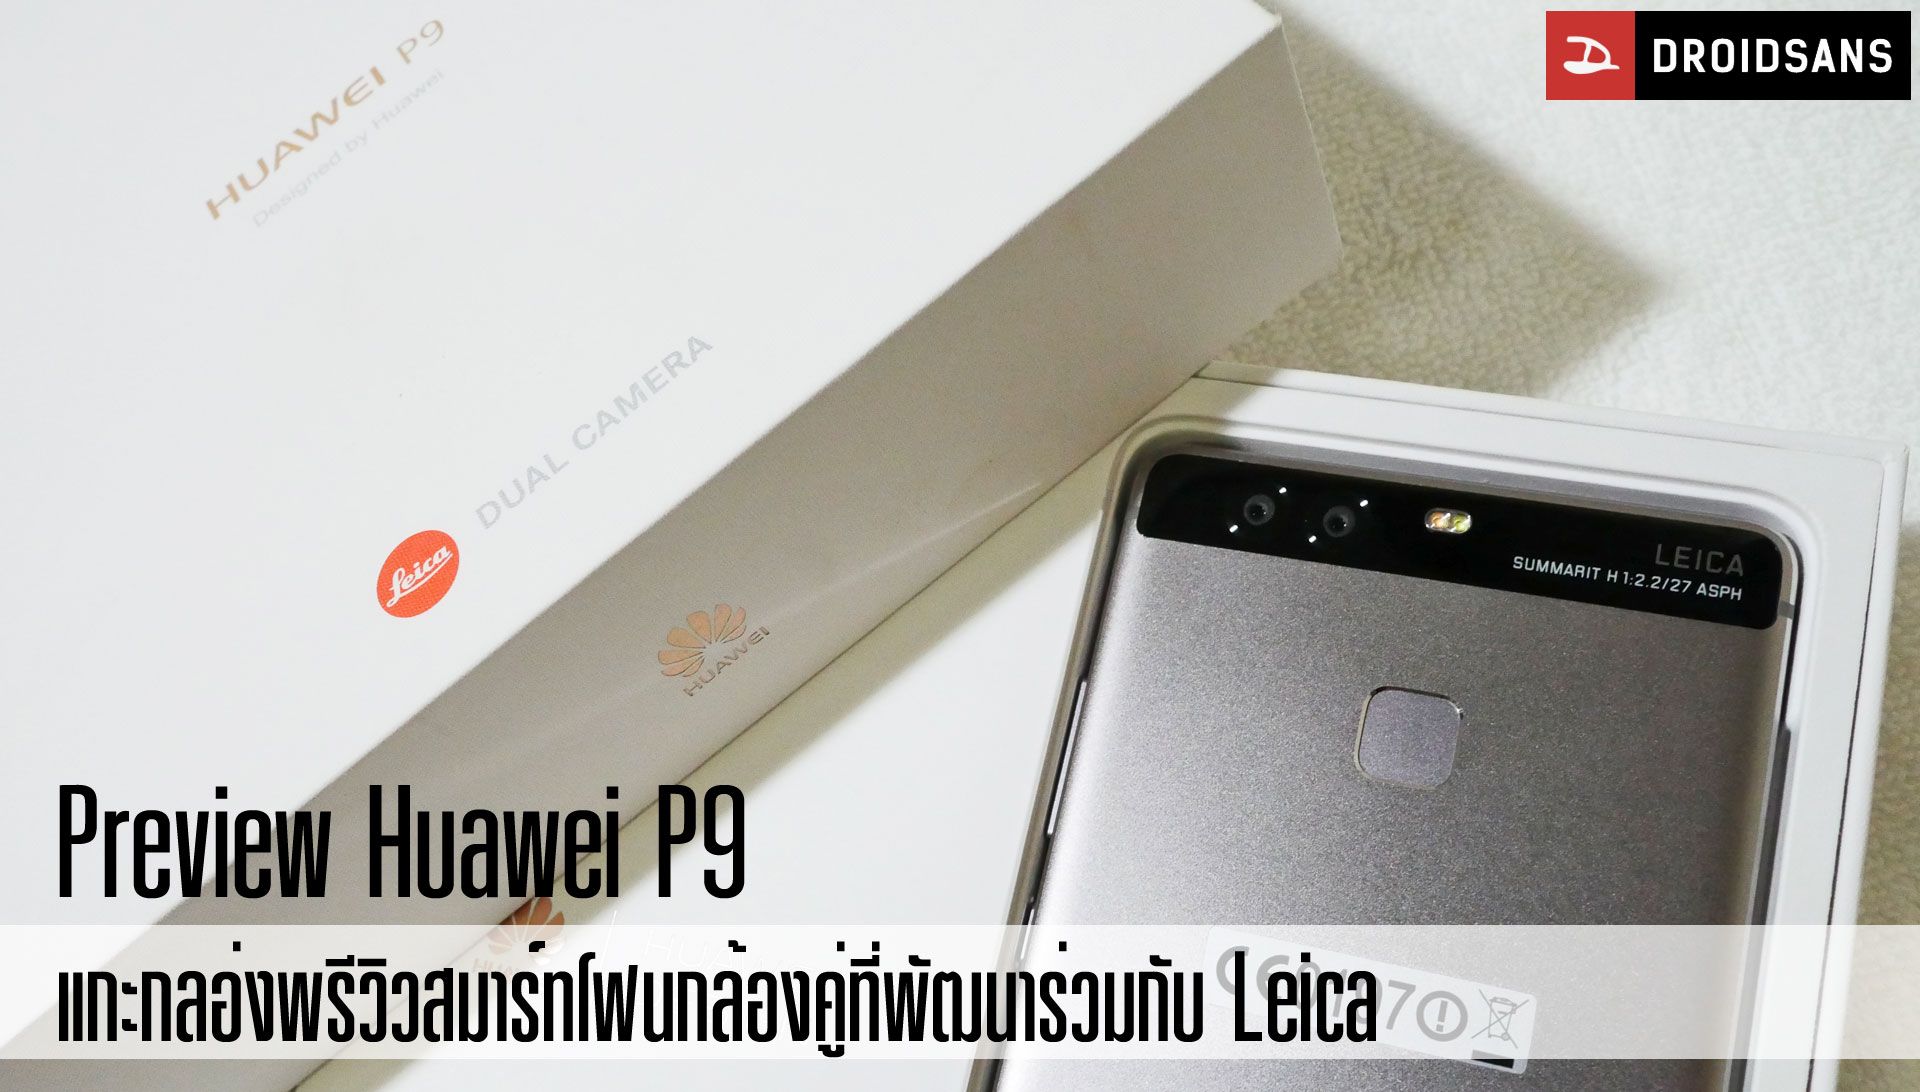 [Preview] แกะกล่องพรีวิว Huawei P9 สมาร์ทโฟนกล้องคู่ที่ร่วมพัฒนากับ Leica